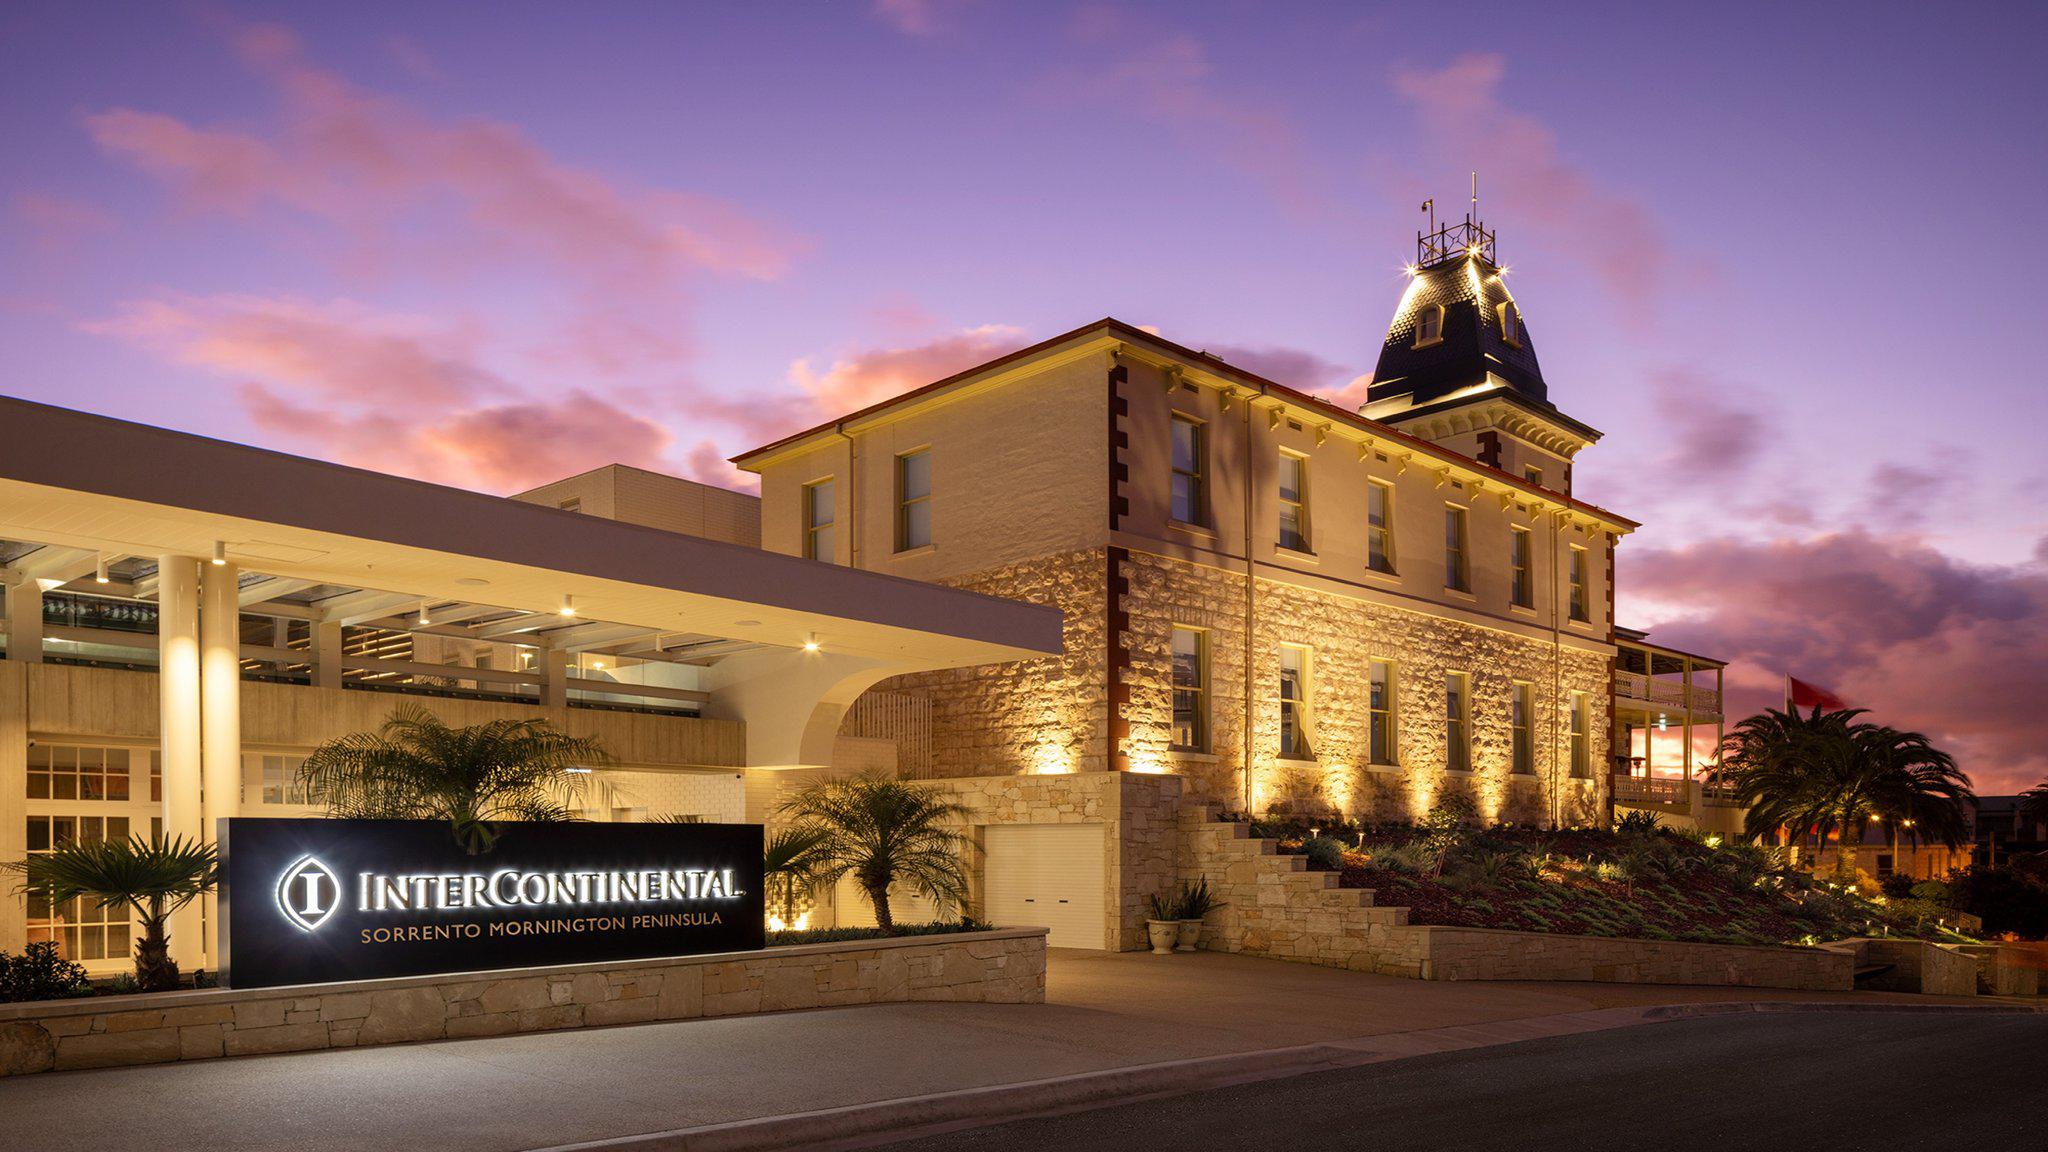 Fotos de InterContinental Sorrento Mornington Peninsula, an IHG Hotel